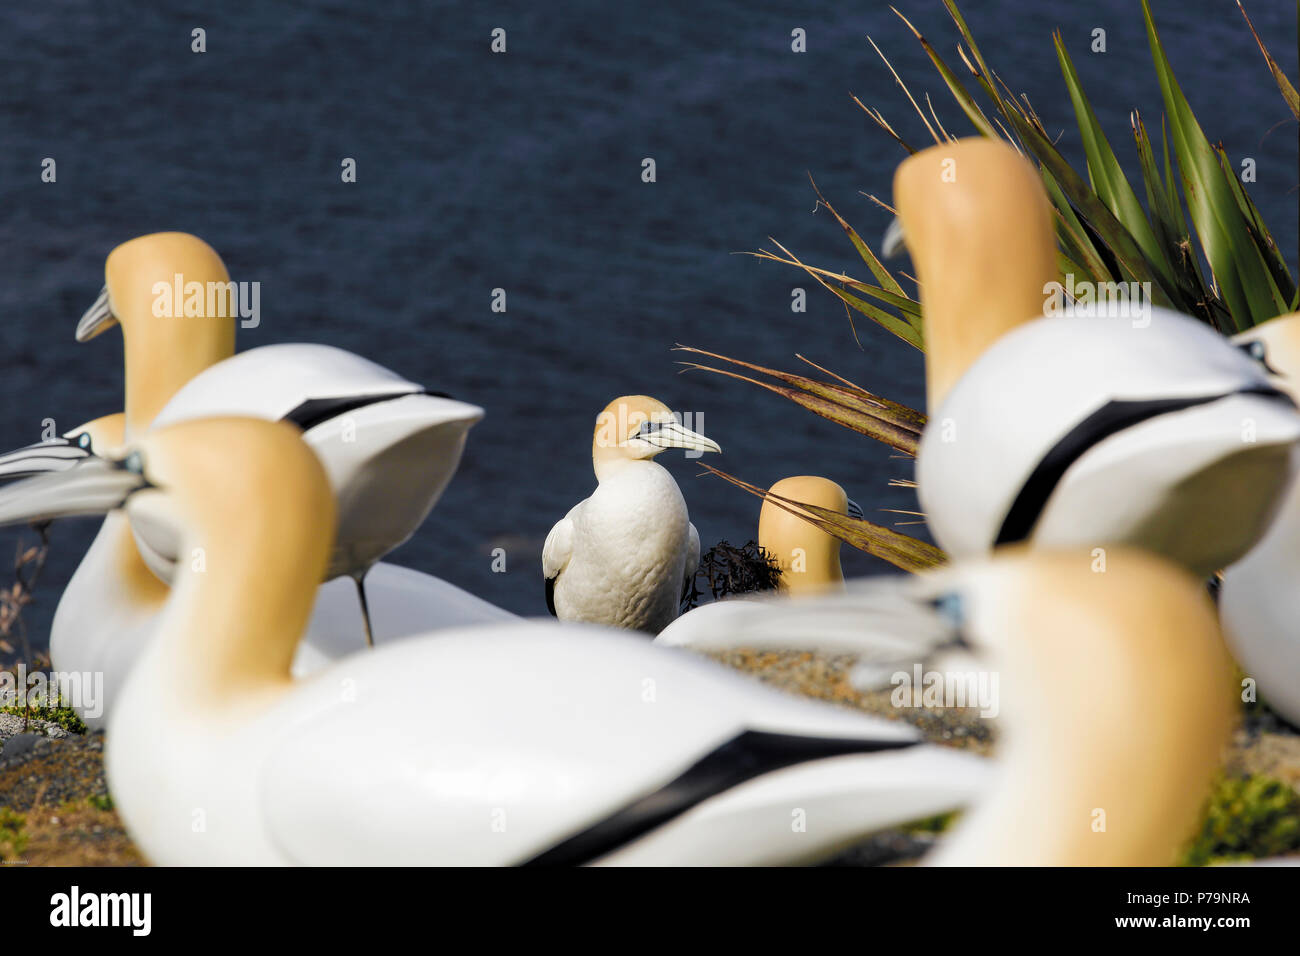 Los señuelos de gannet australasianos solían intentar formar una nueva colonia en el Parque Regional de Tawharanui, Nueva Zelanda Foto de stock